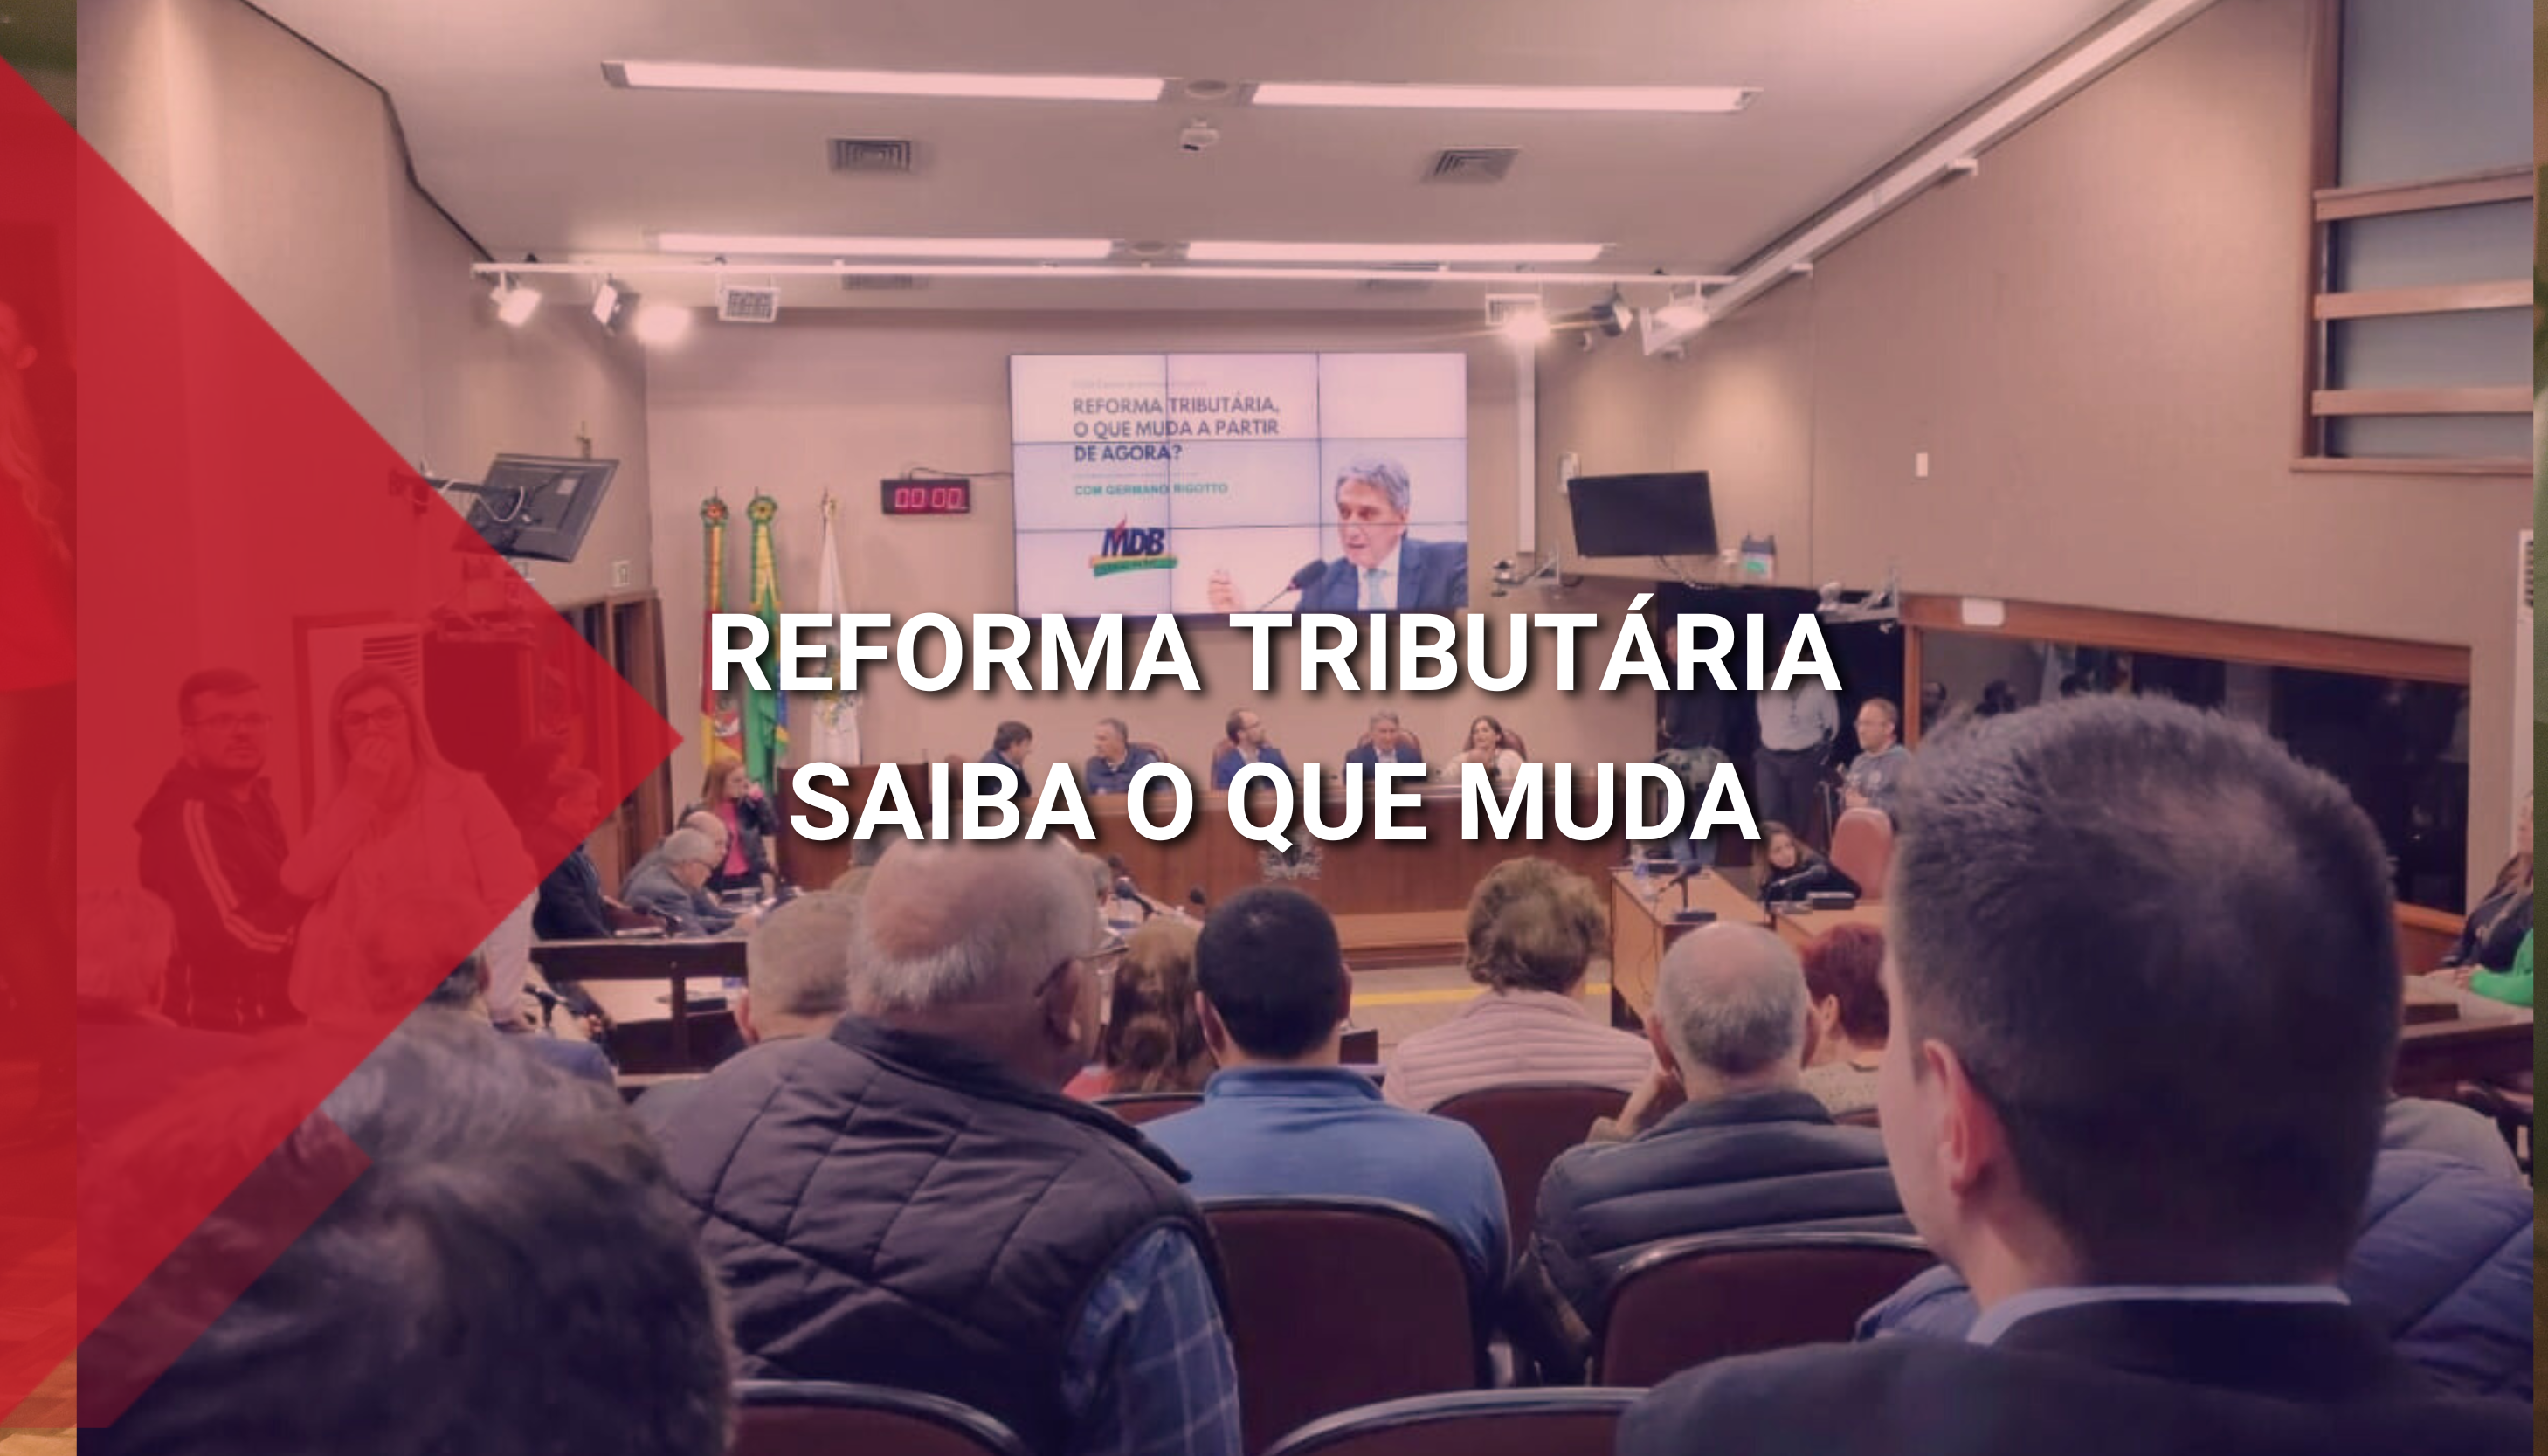 Plenário da Câmara dos Vereadores de Caxias do Sul. fala sobre as mudanças da Reforma Tributária.